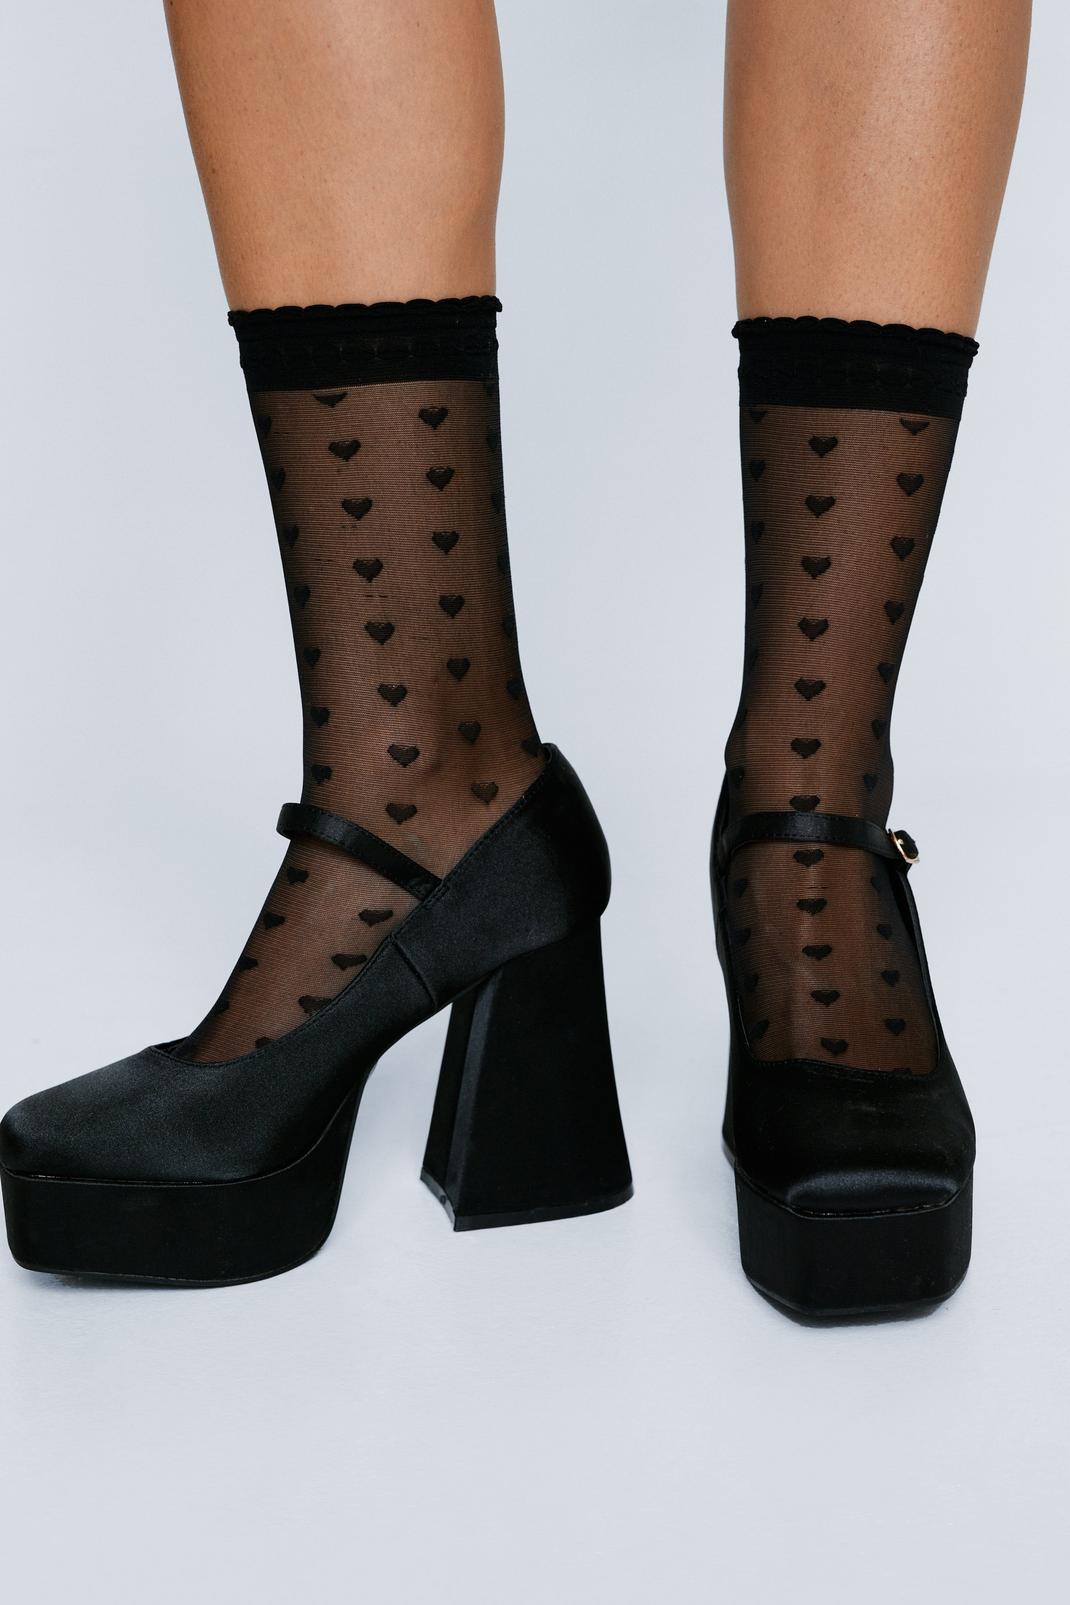 womens-black-mesh-heart-socks